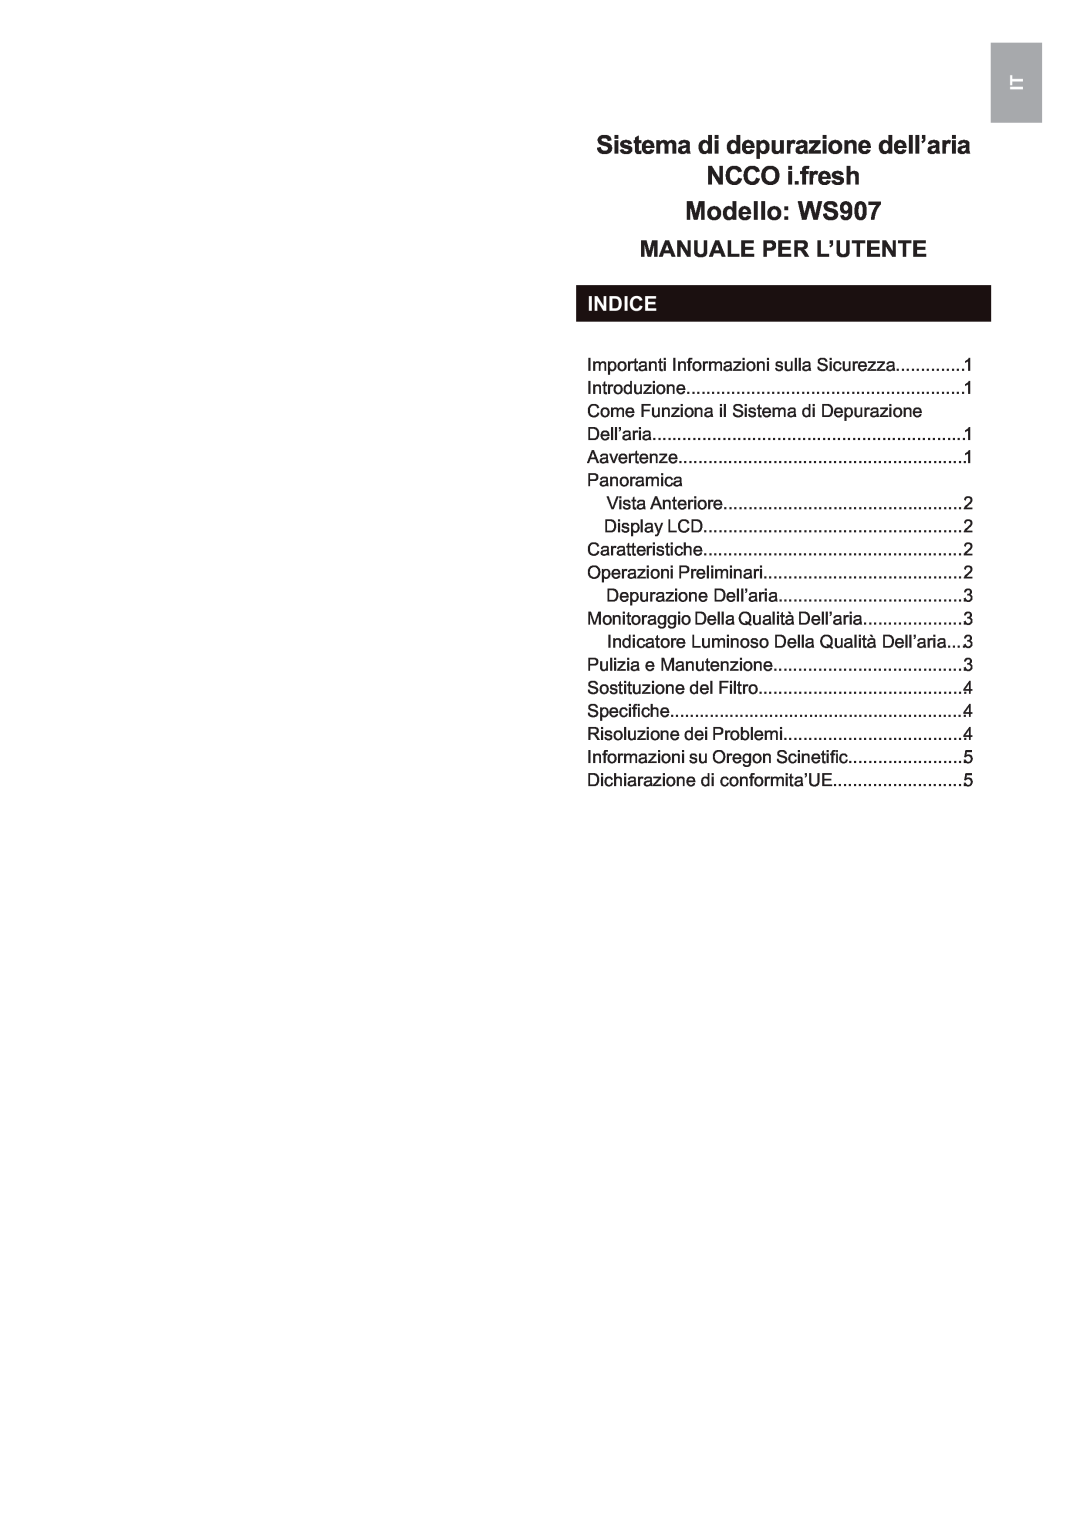 Oregon Scientific user manual Sistema di depurazione dell’aria NCCO i.fresh, Modello WS907, Manuale Per L’Utente, Indice 